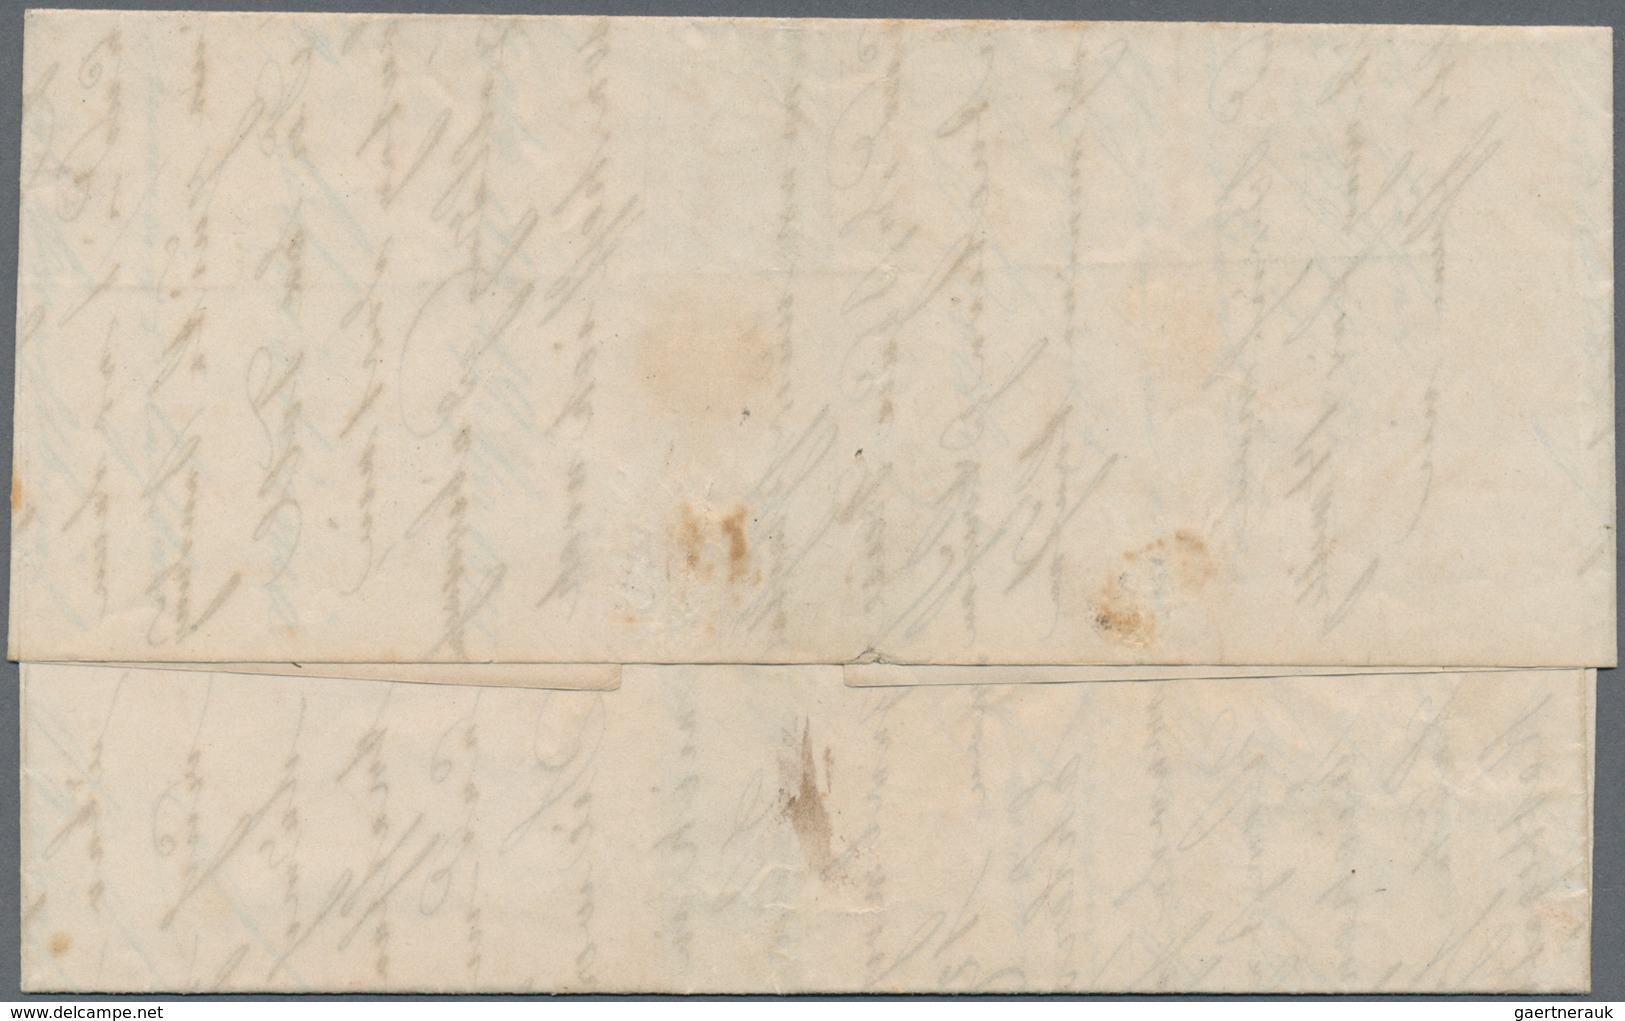 Deutsches Reich - Brustschild: 1872, Brief Mit Hufeisenstempel "LÜBECK 19/1 72" (Spalink 22-2) Frank - Brieven En Documenten